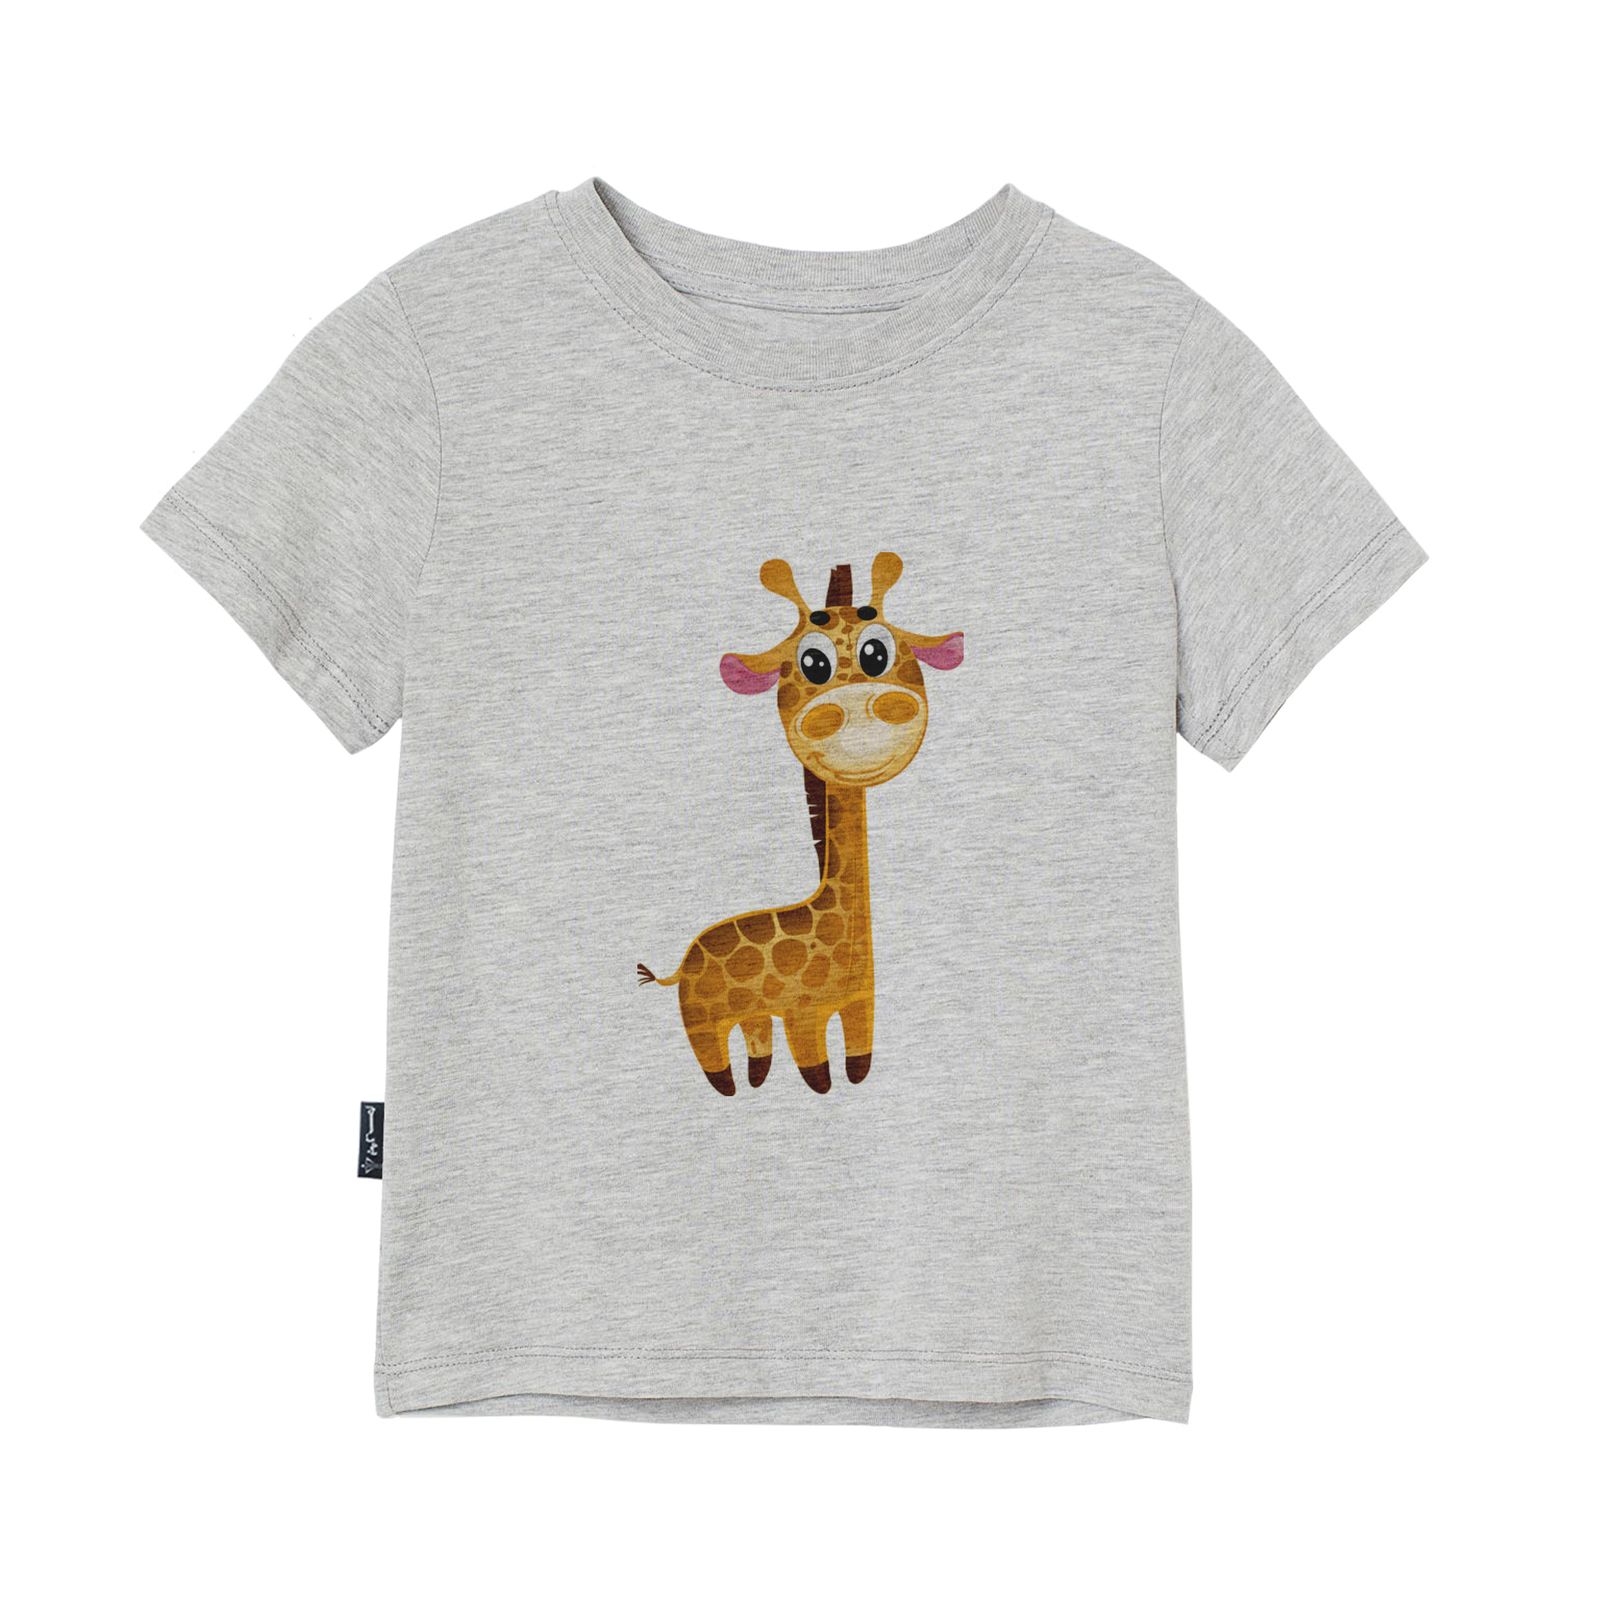 تی شرت آستین کوتاه دخترانه به رسم مدل زرافه کد 1109 -  - 1